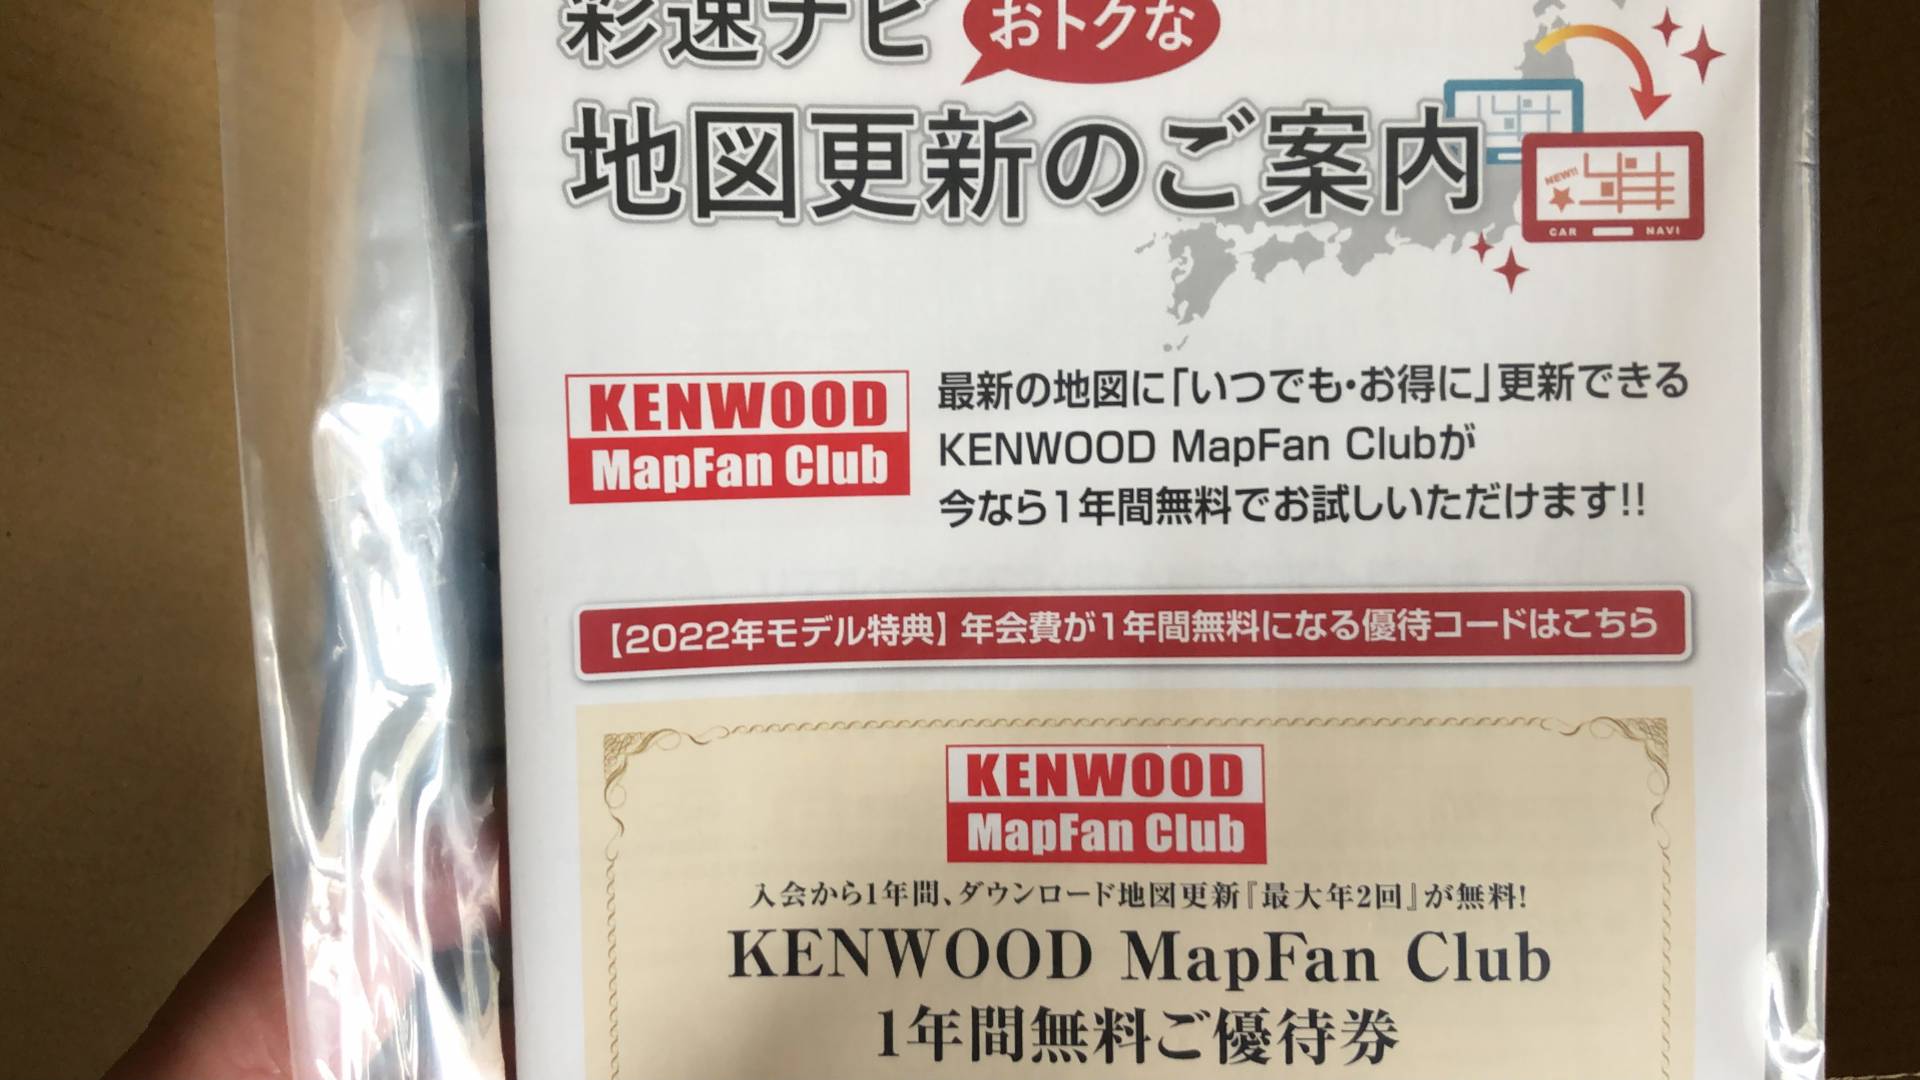 【軽バンカスタマイズ2】KENWOOD MDV-S809F 彩速8インチフローティングナビ